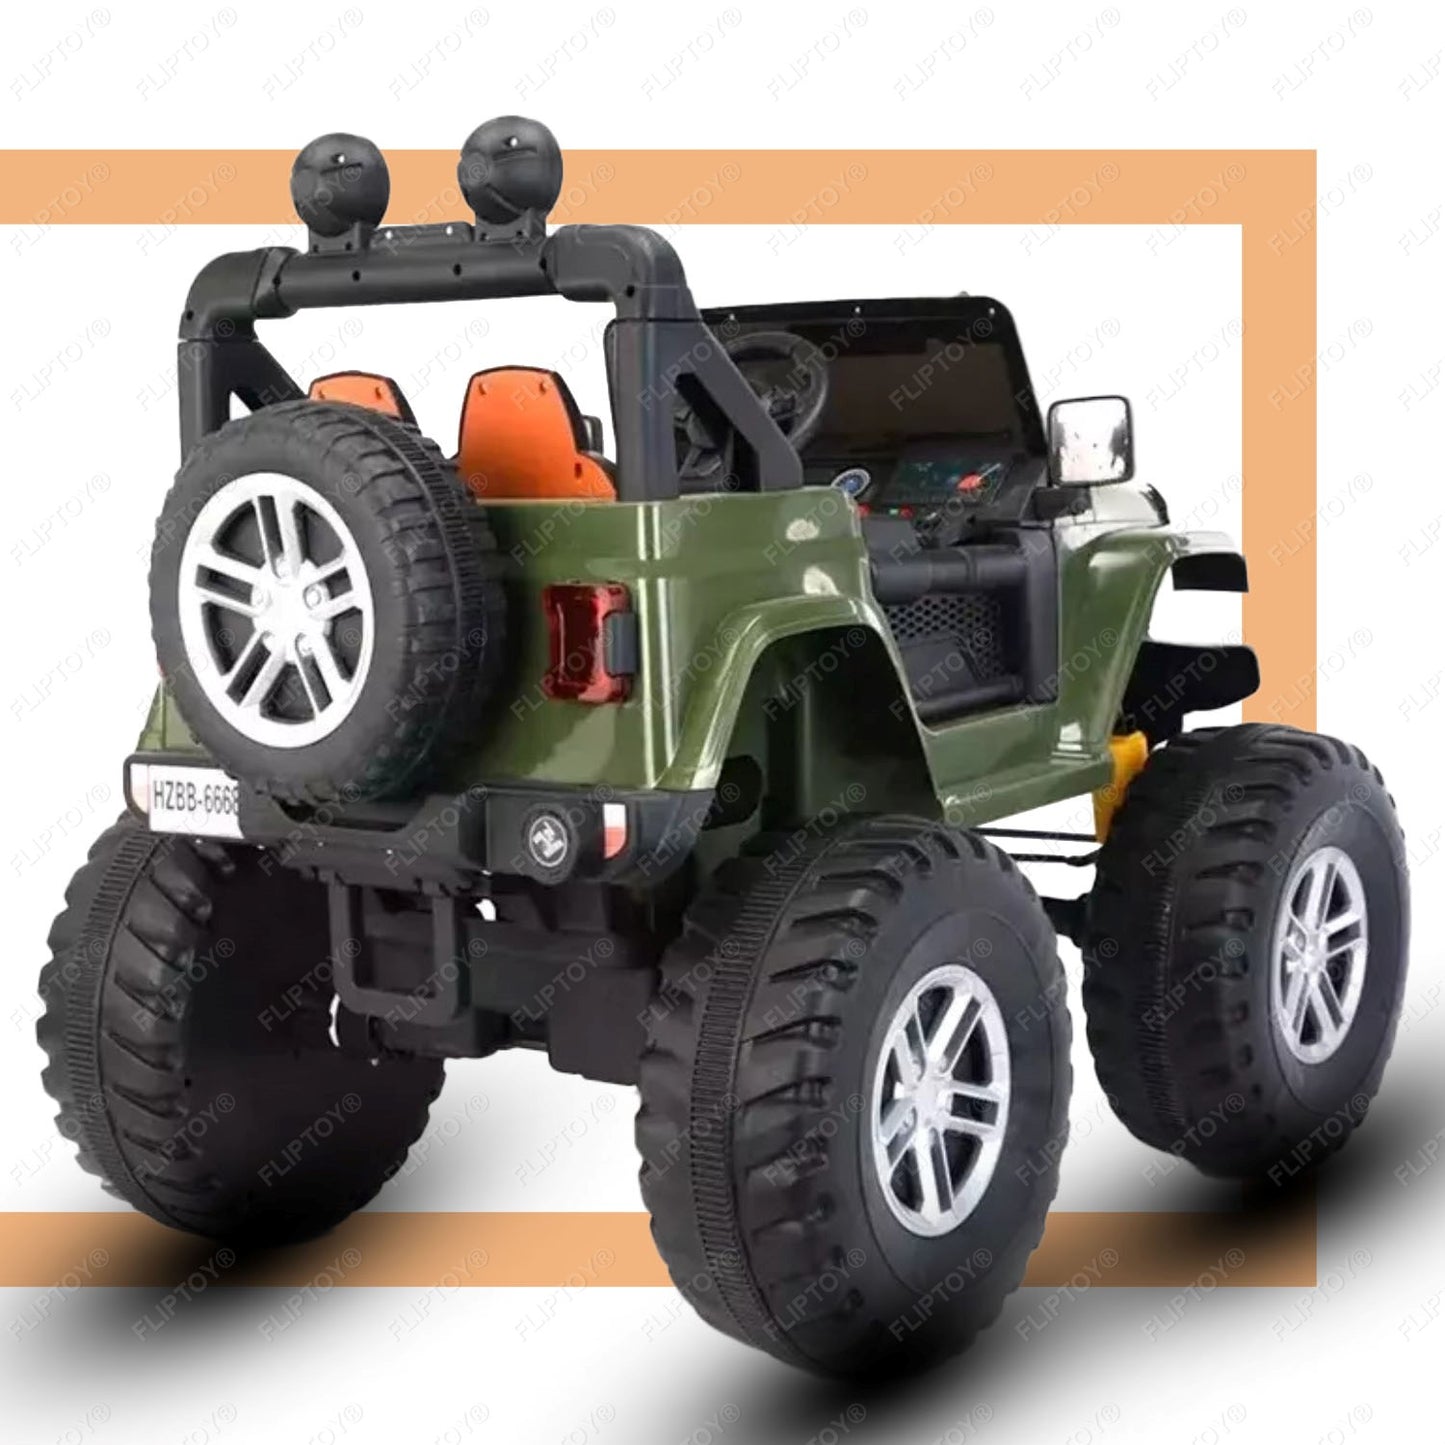 Kids ride on jeep | Monster wheel | 4*4 ride on | Model FLP6688 | 12V battery operated